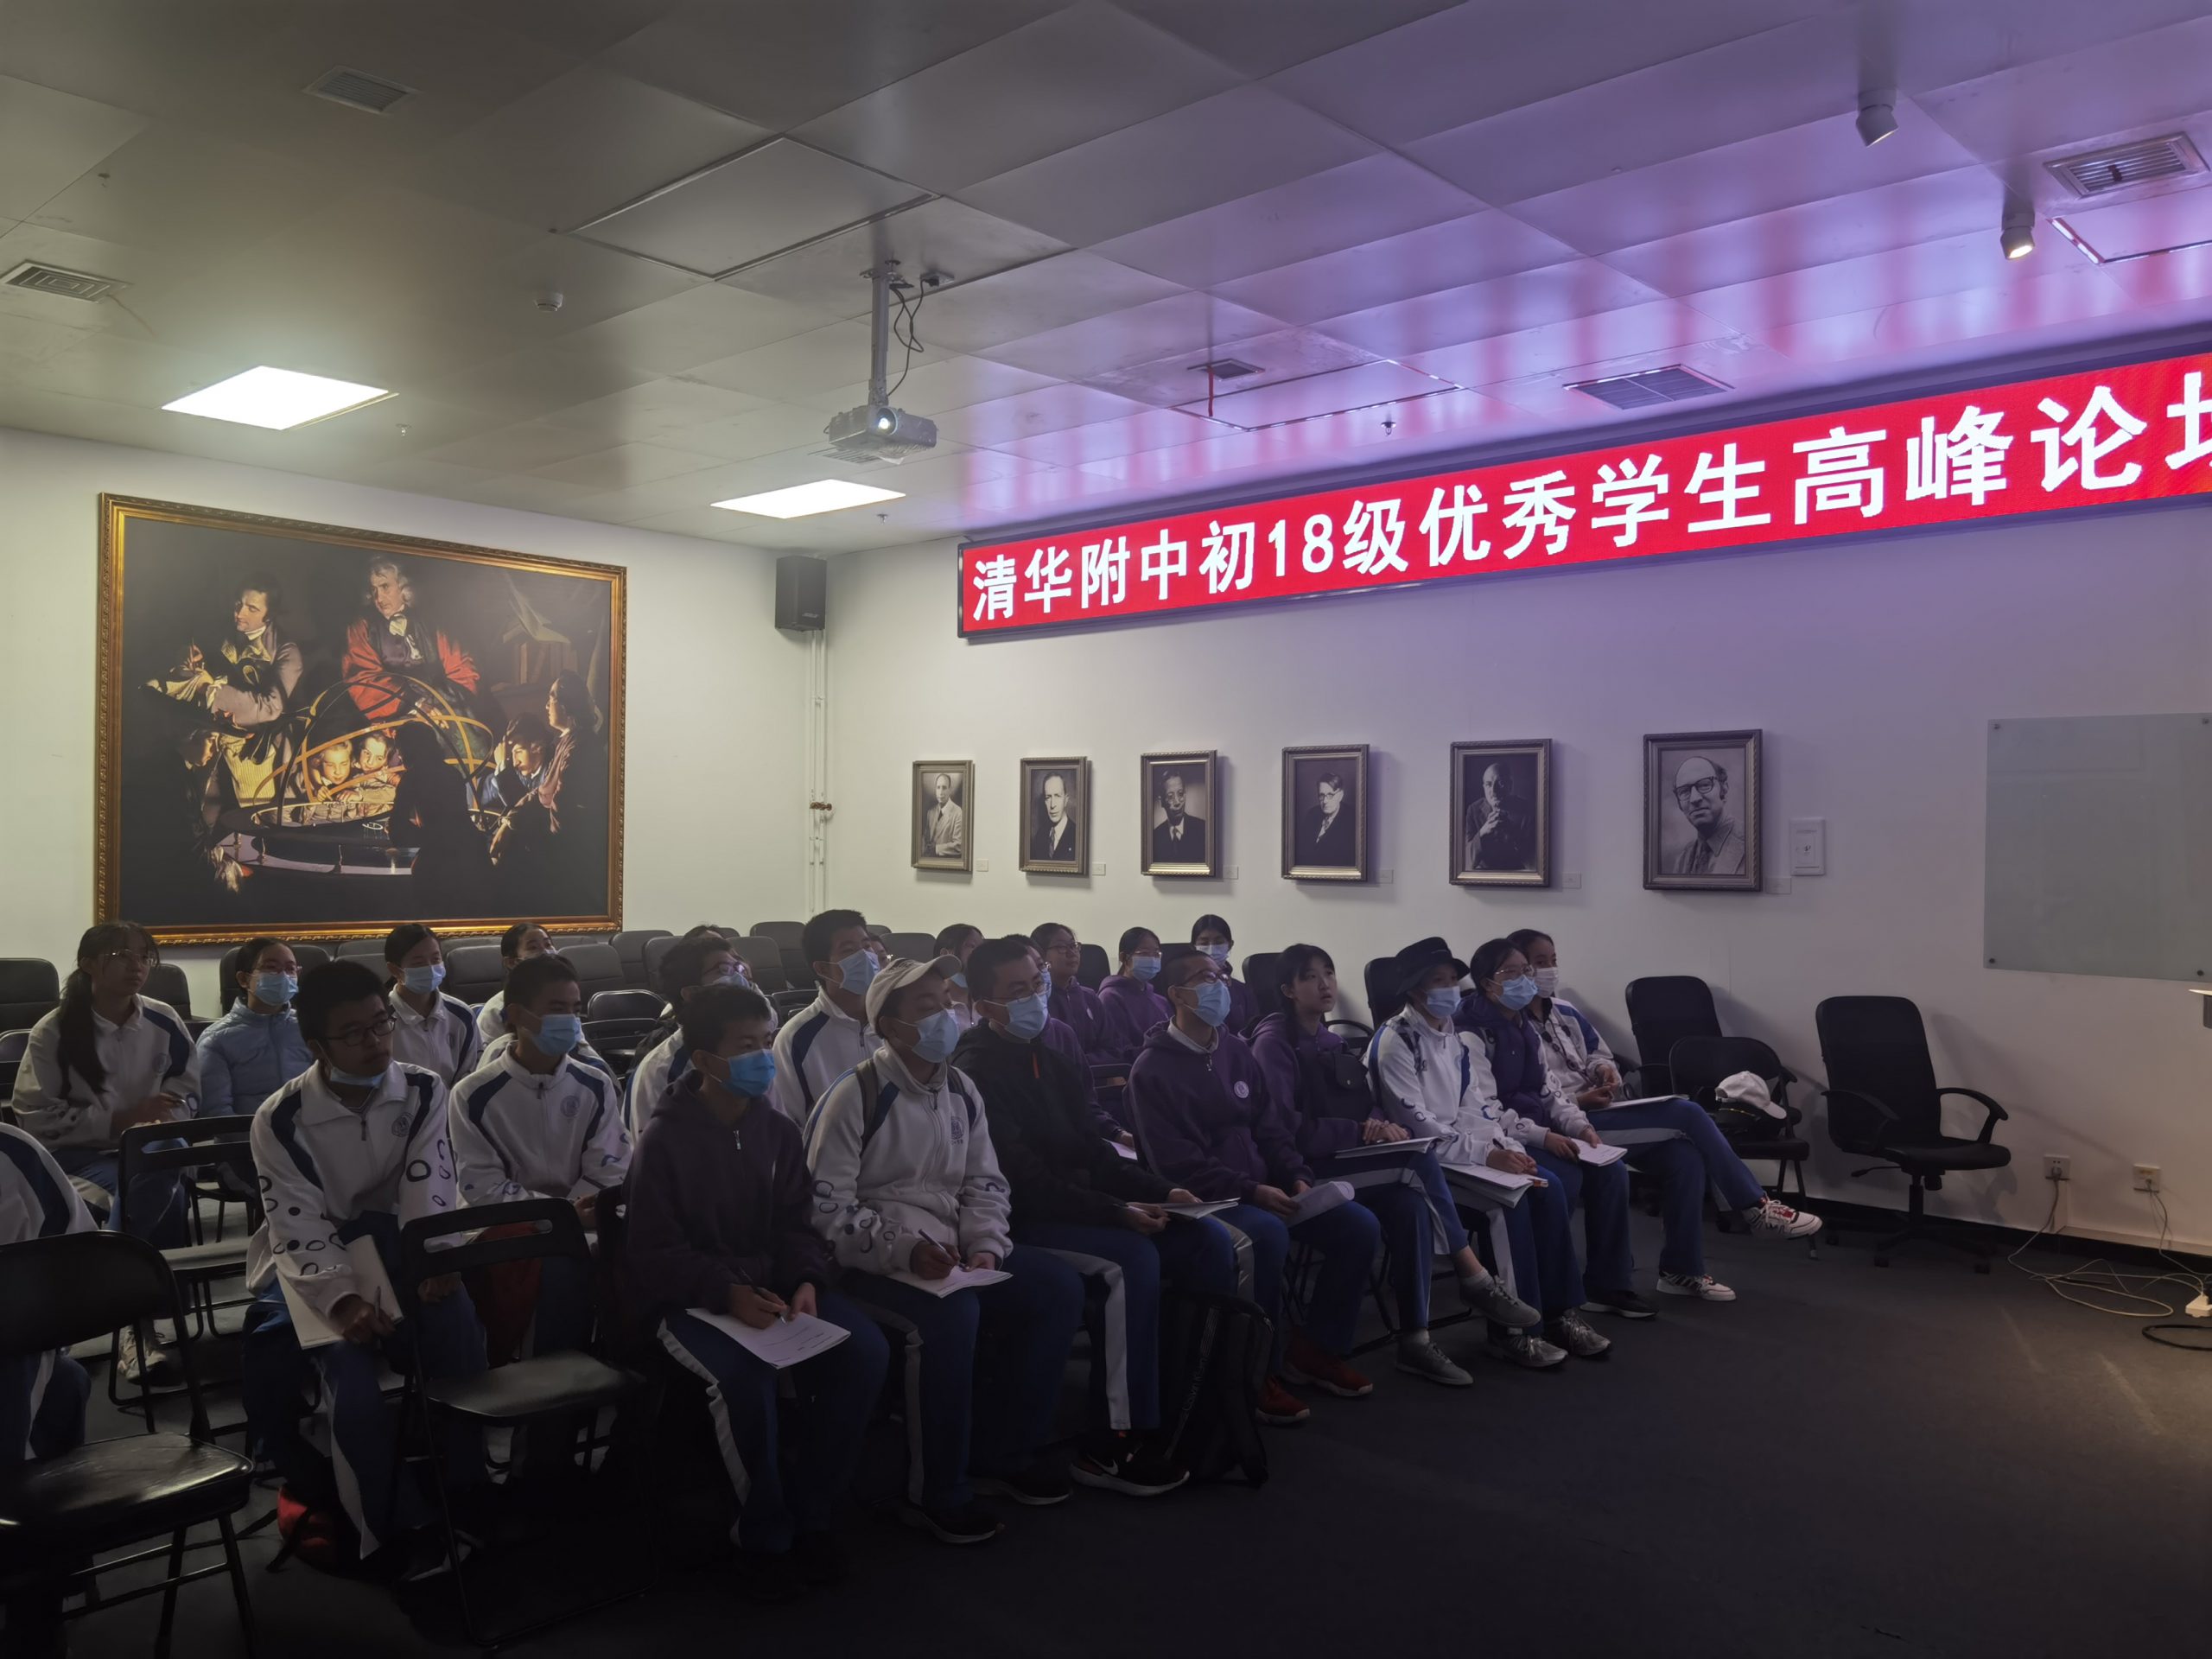 清华附中初18级优秀学生高峰论坛在清科博举办